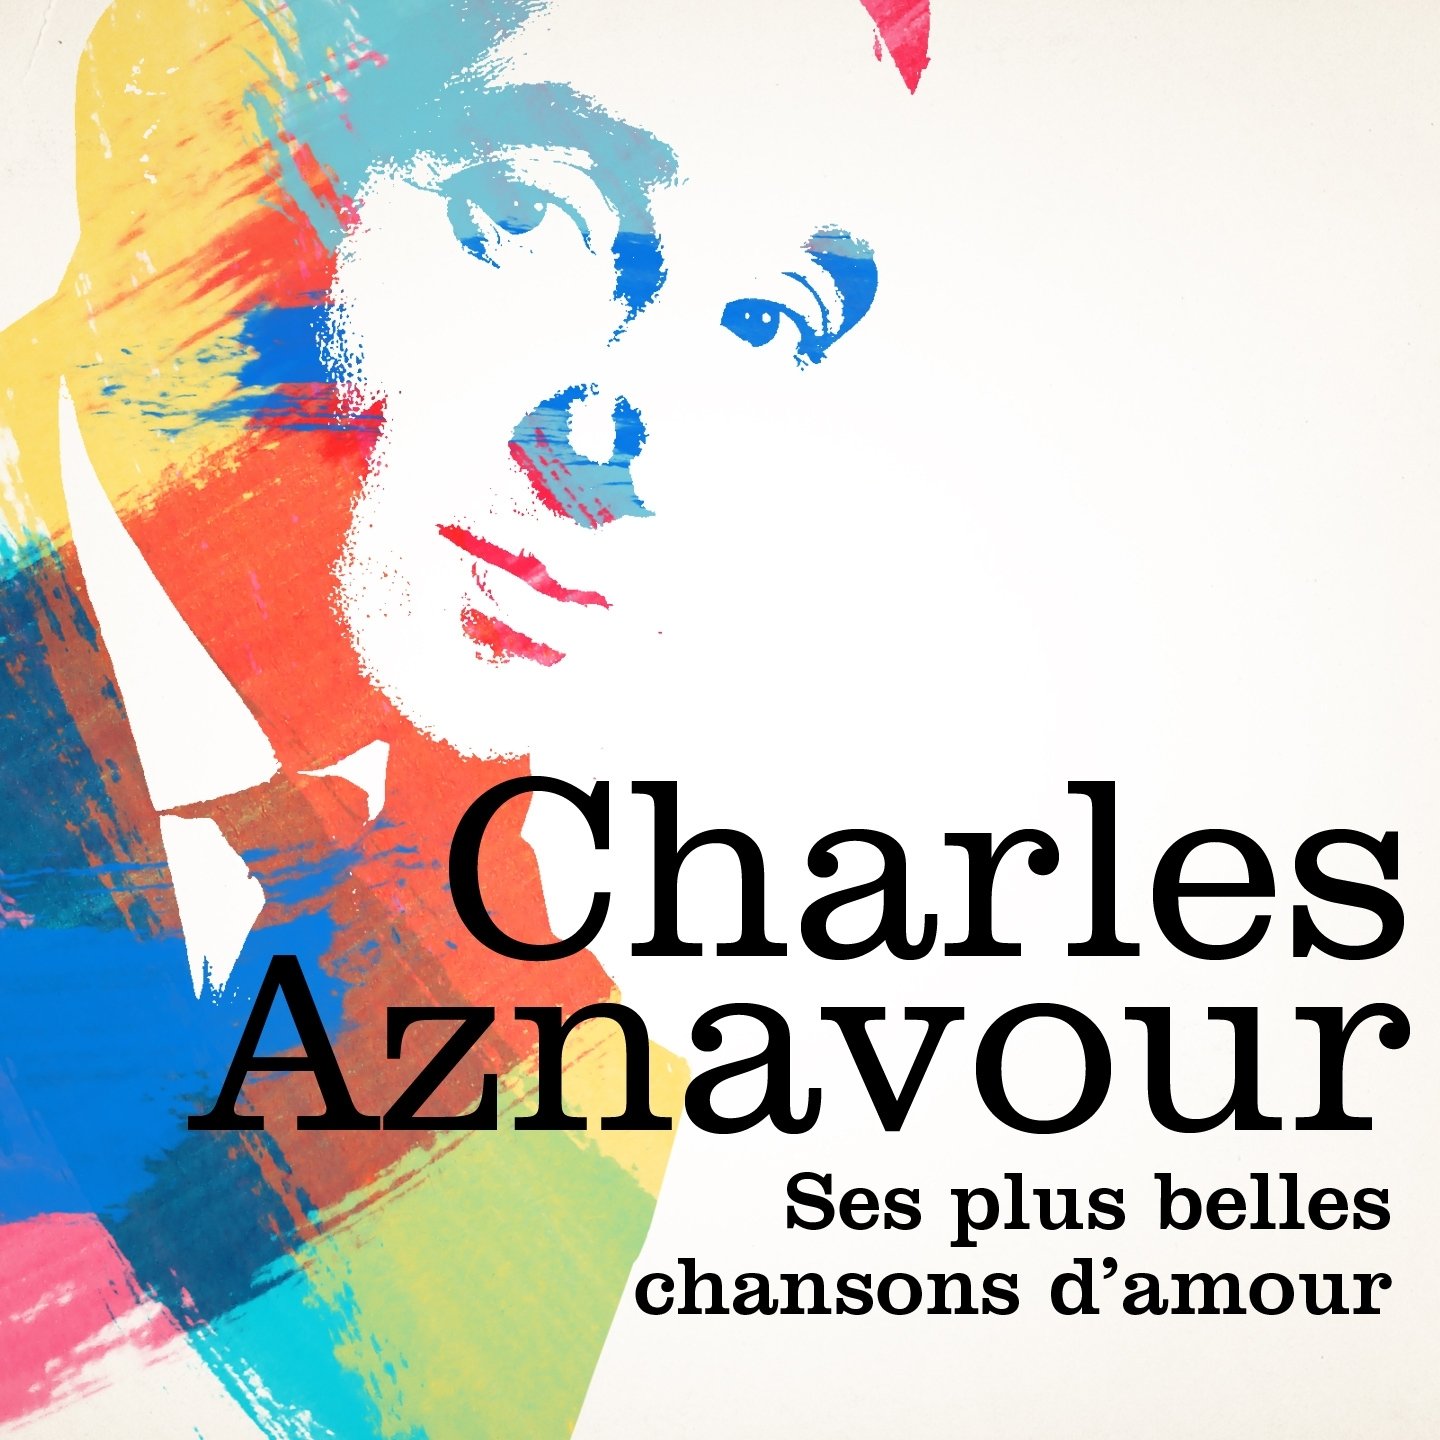 Charles Aznavour : ses plus belles chansons d'amour — Charles Aznavour |  Last.fm